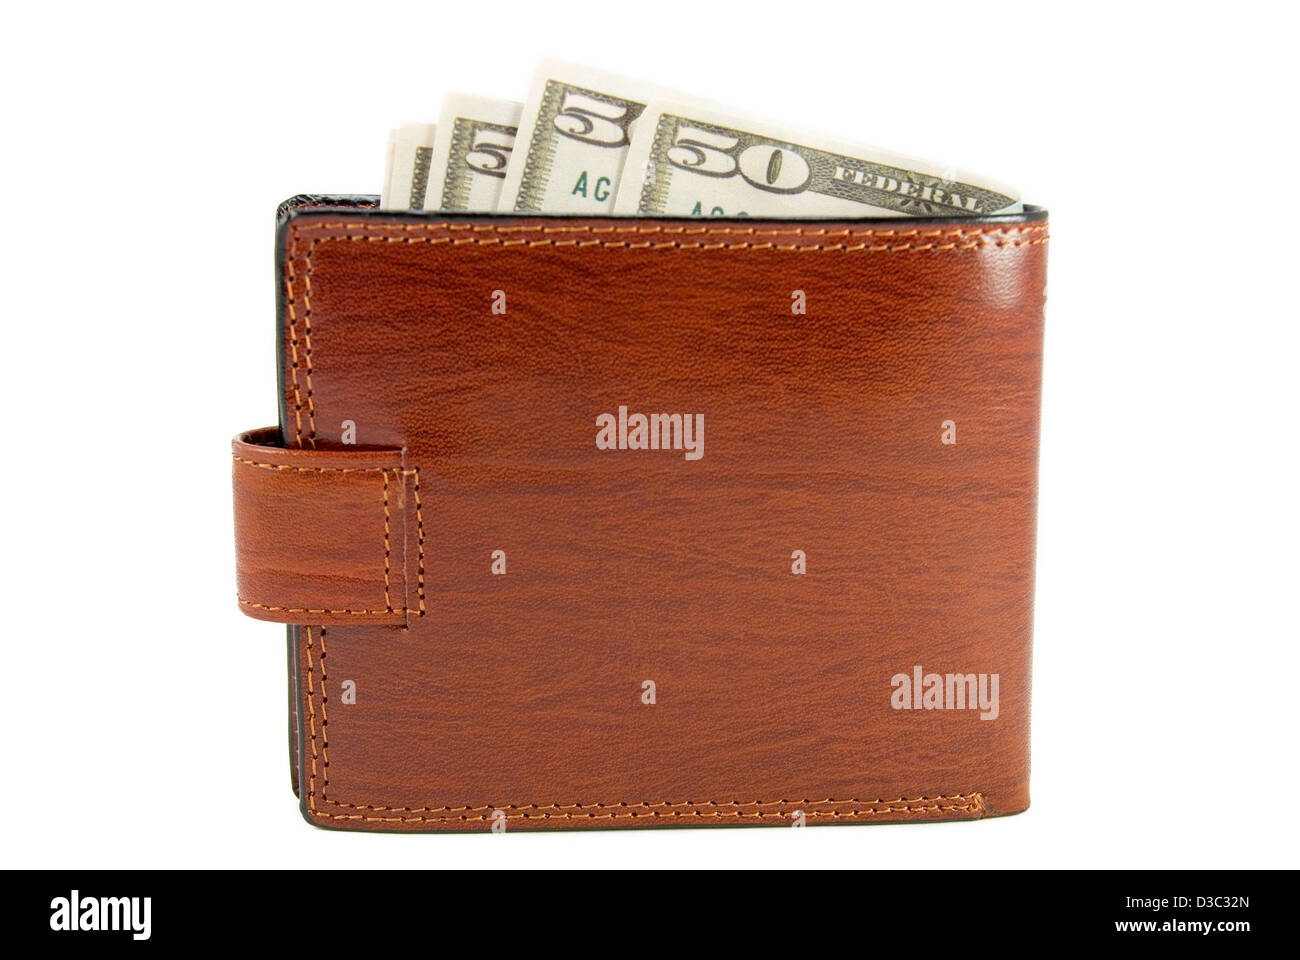 Le sac à main marron avec de l'argent est photographié sur un fond blanc Banque D'Images